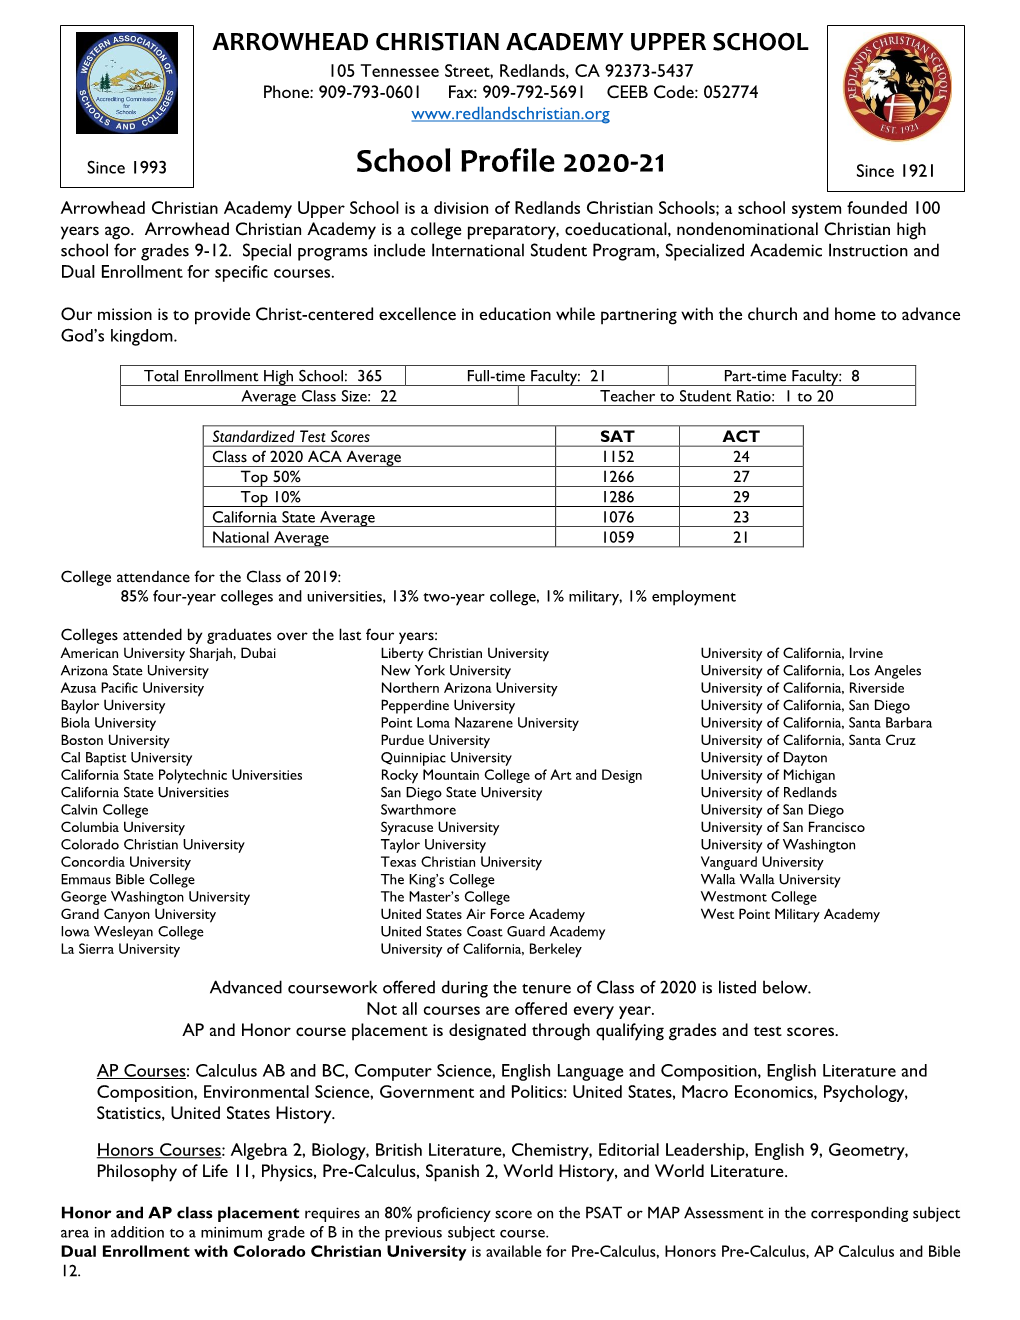 School Profile 2020-21 Since 1921